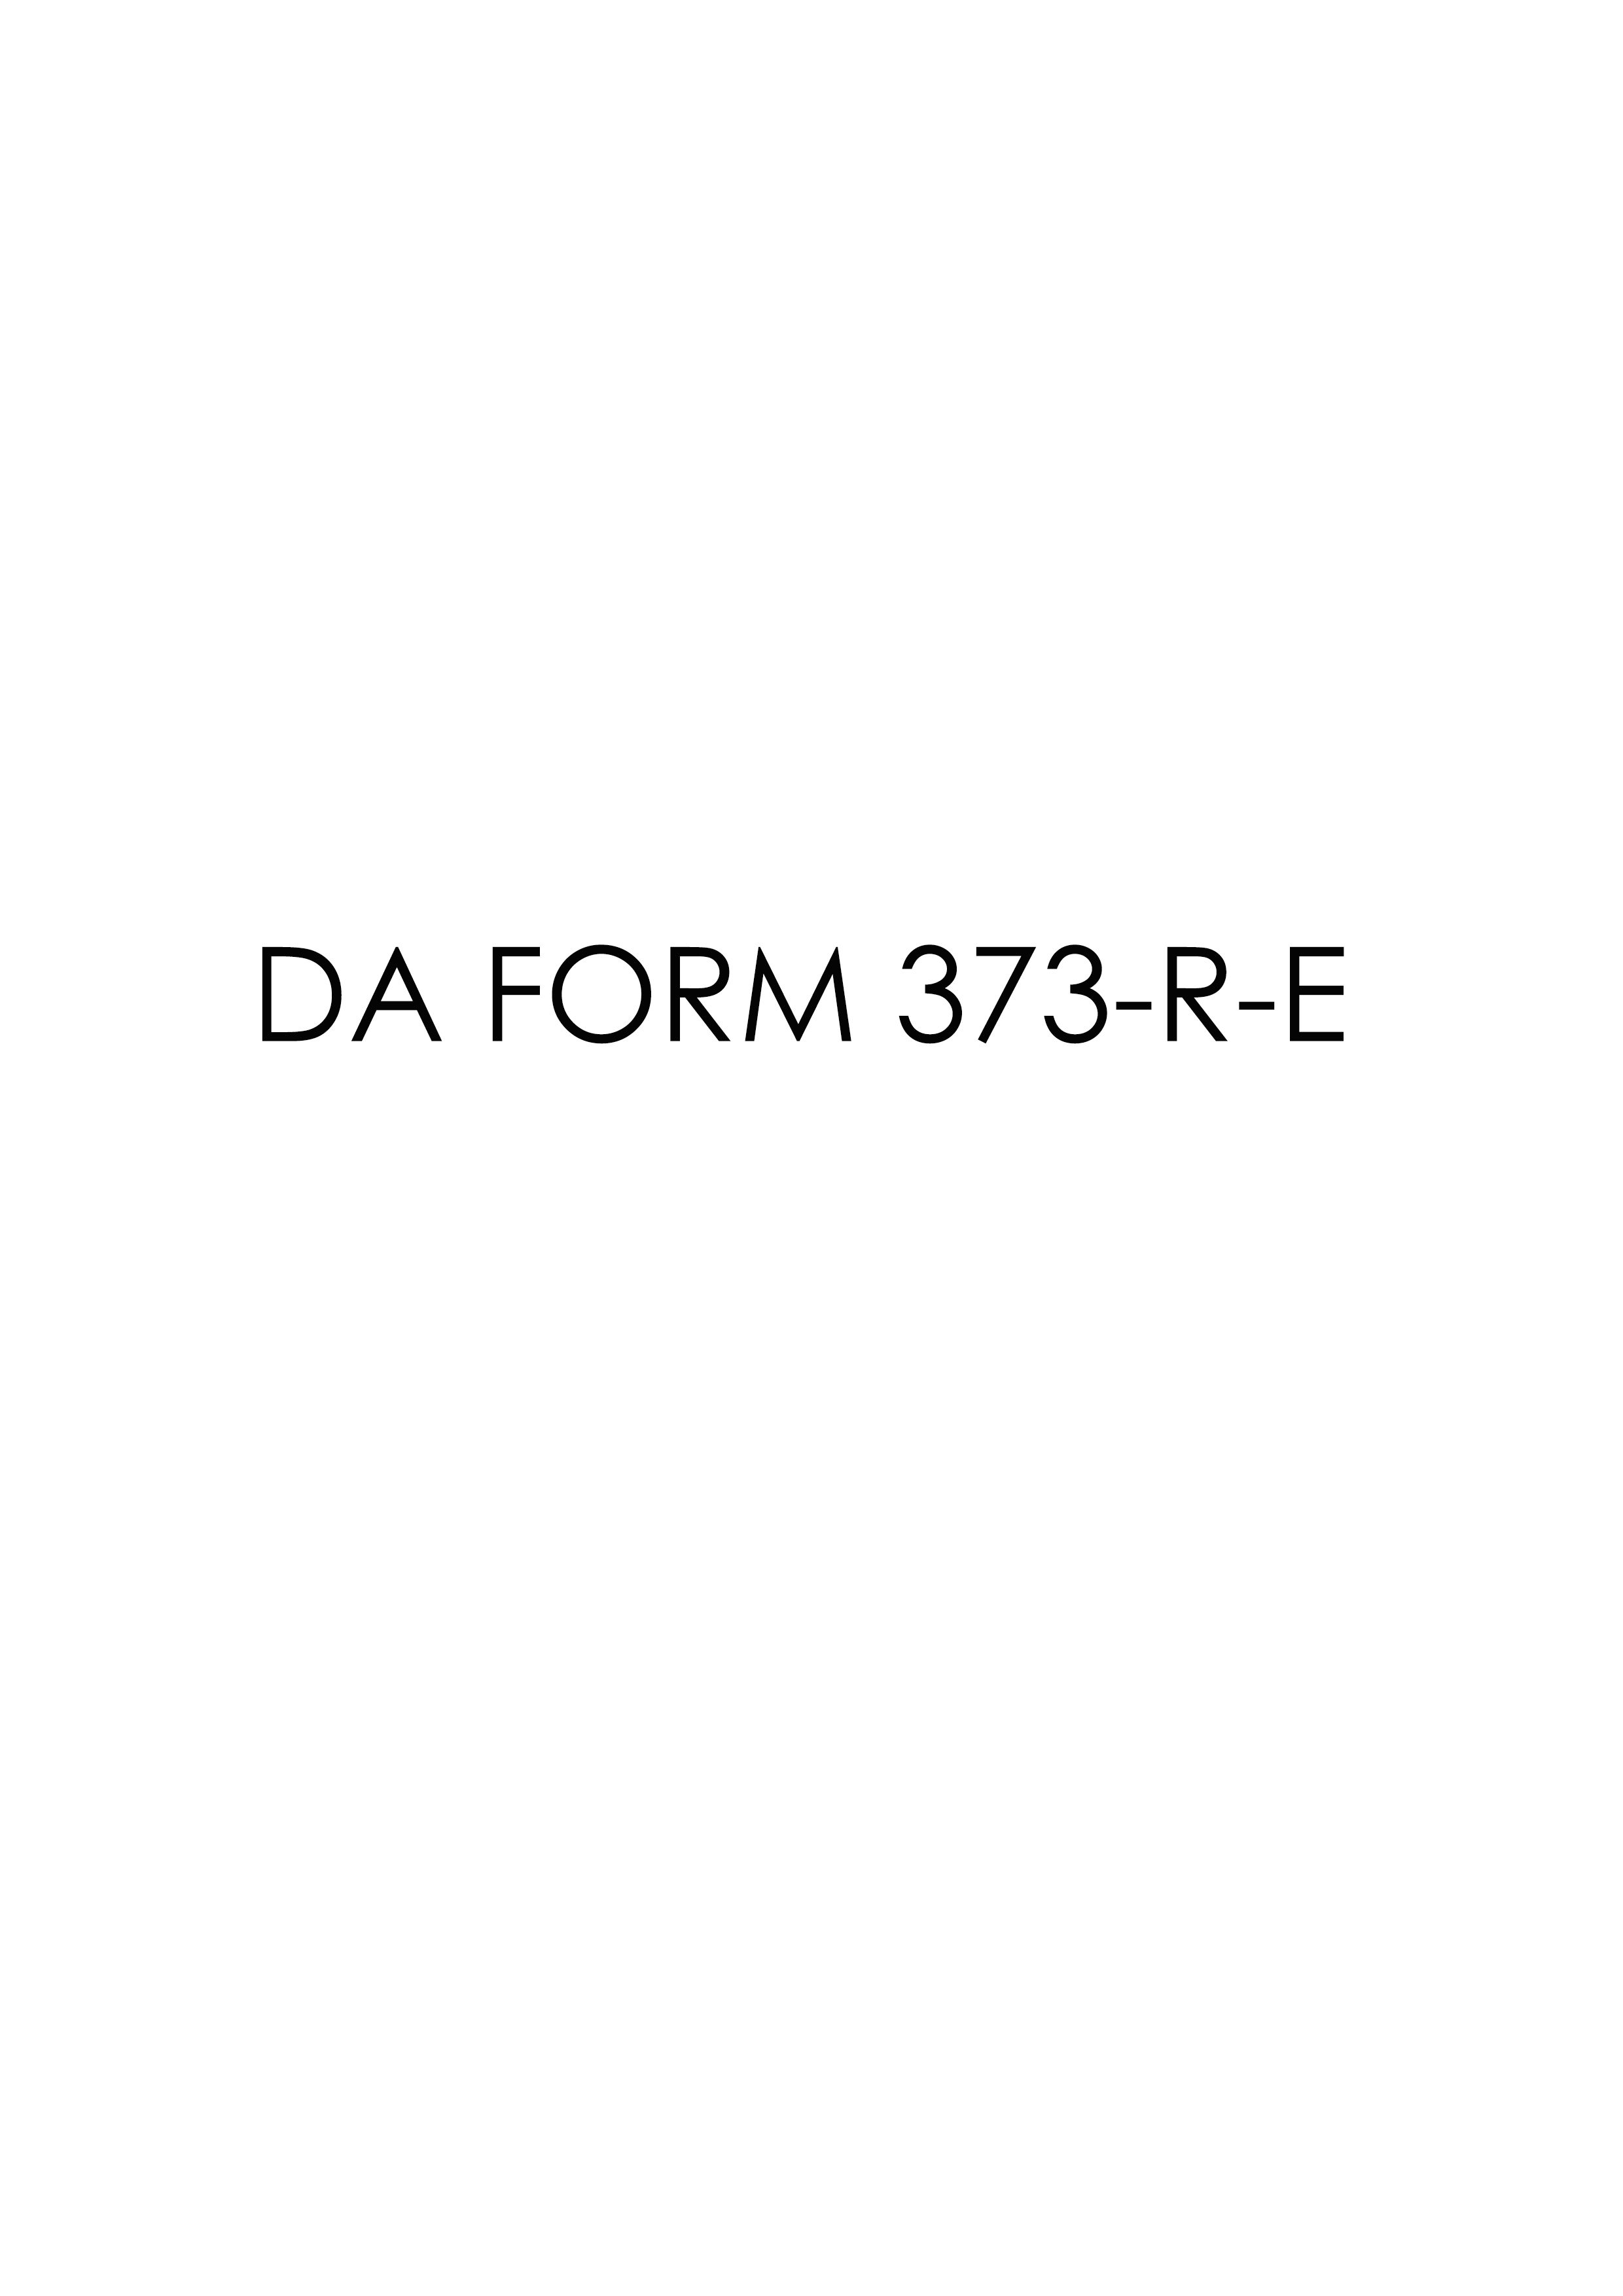 da Form 373-R-E fillable